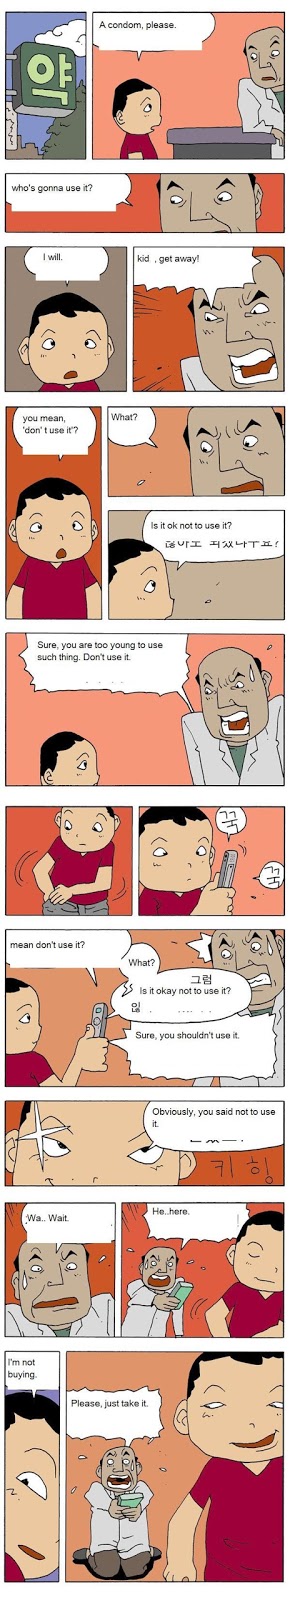 Yang Young-soon Korean Comics kid buying condoms